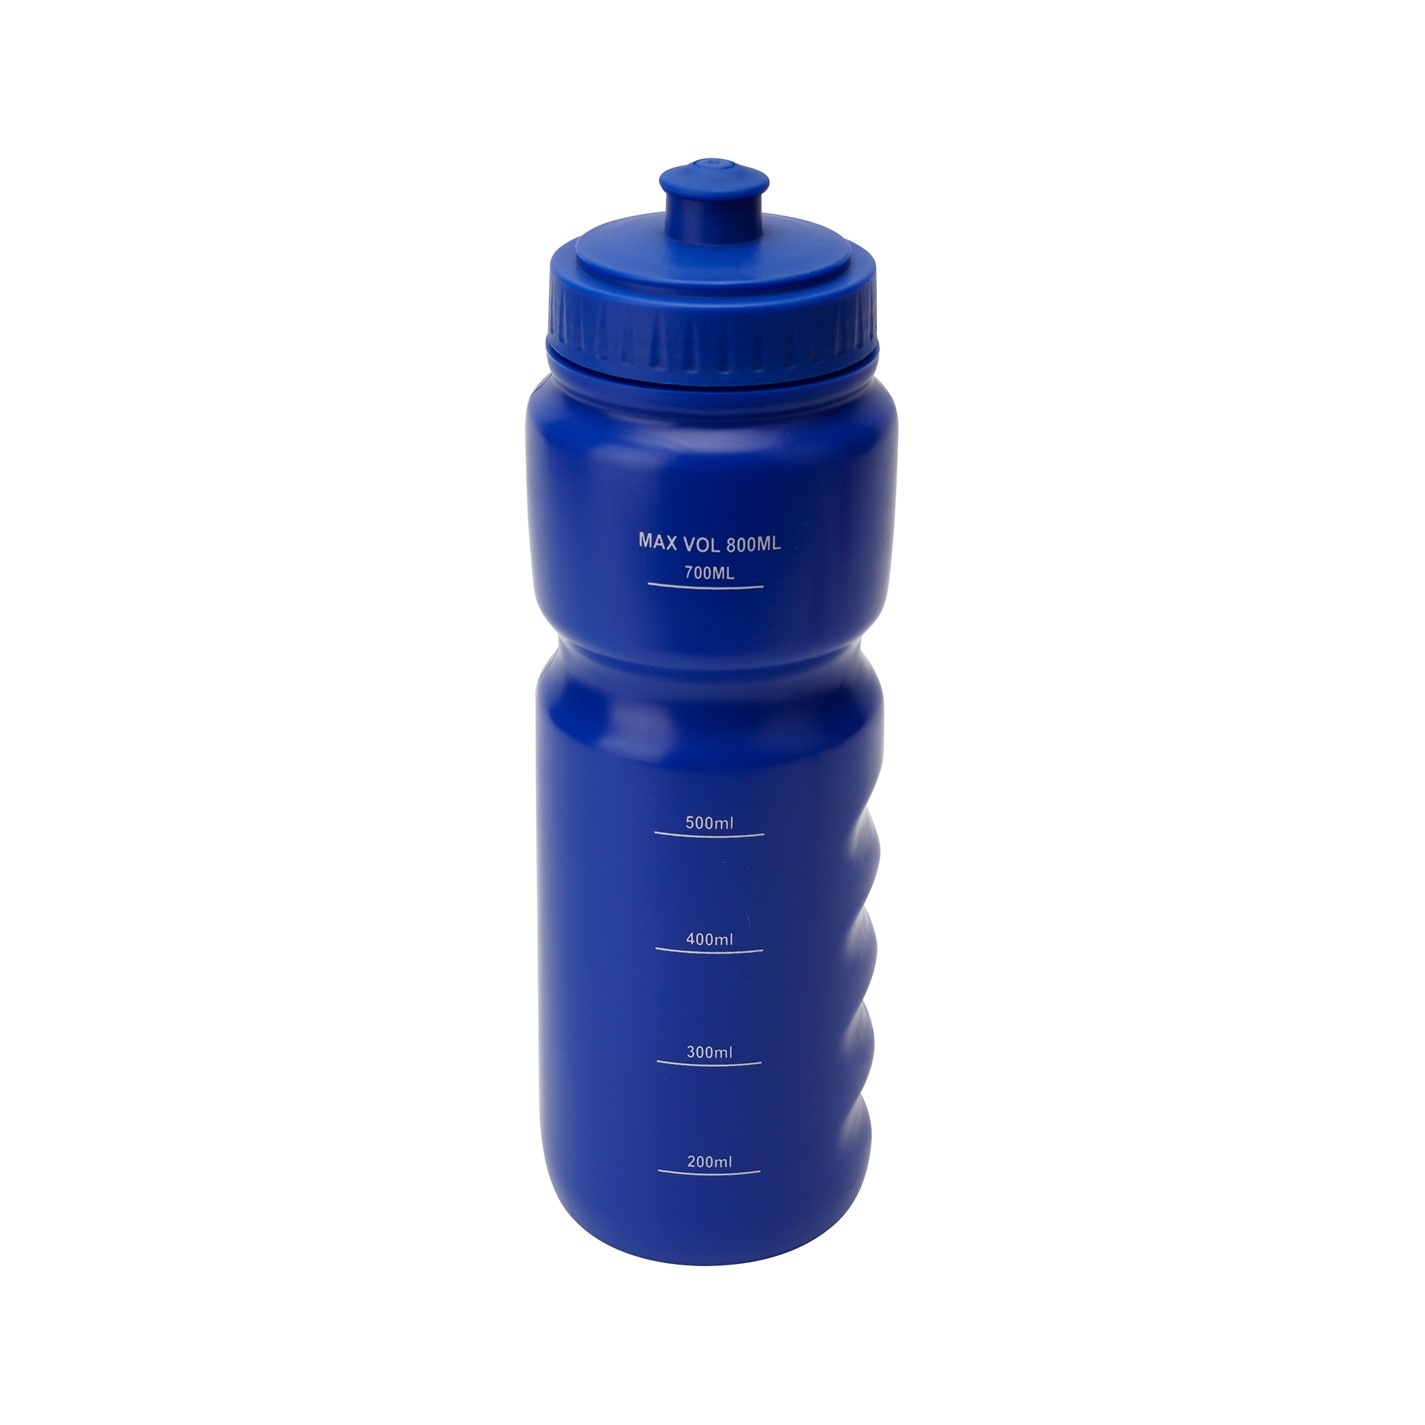 Slazenger Water Bottle